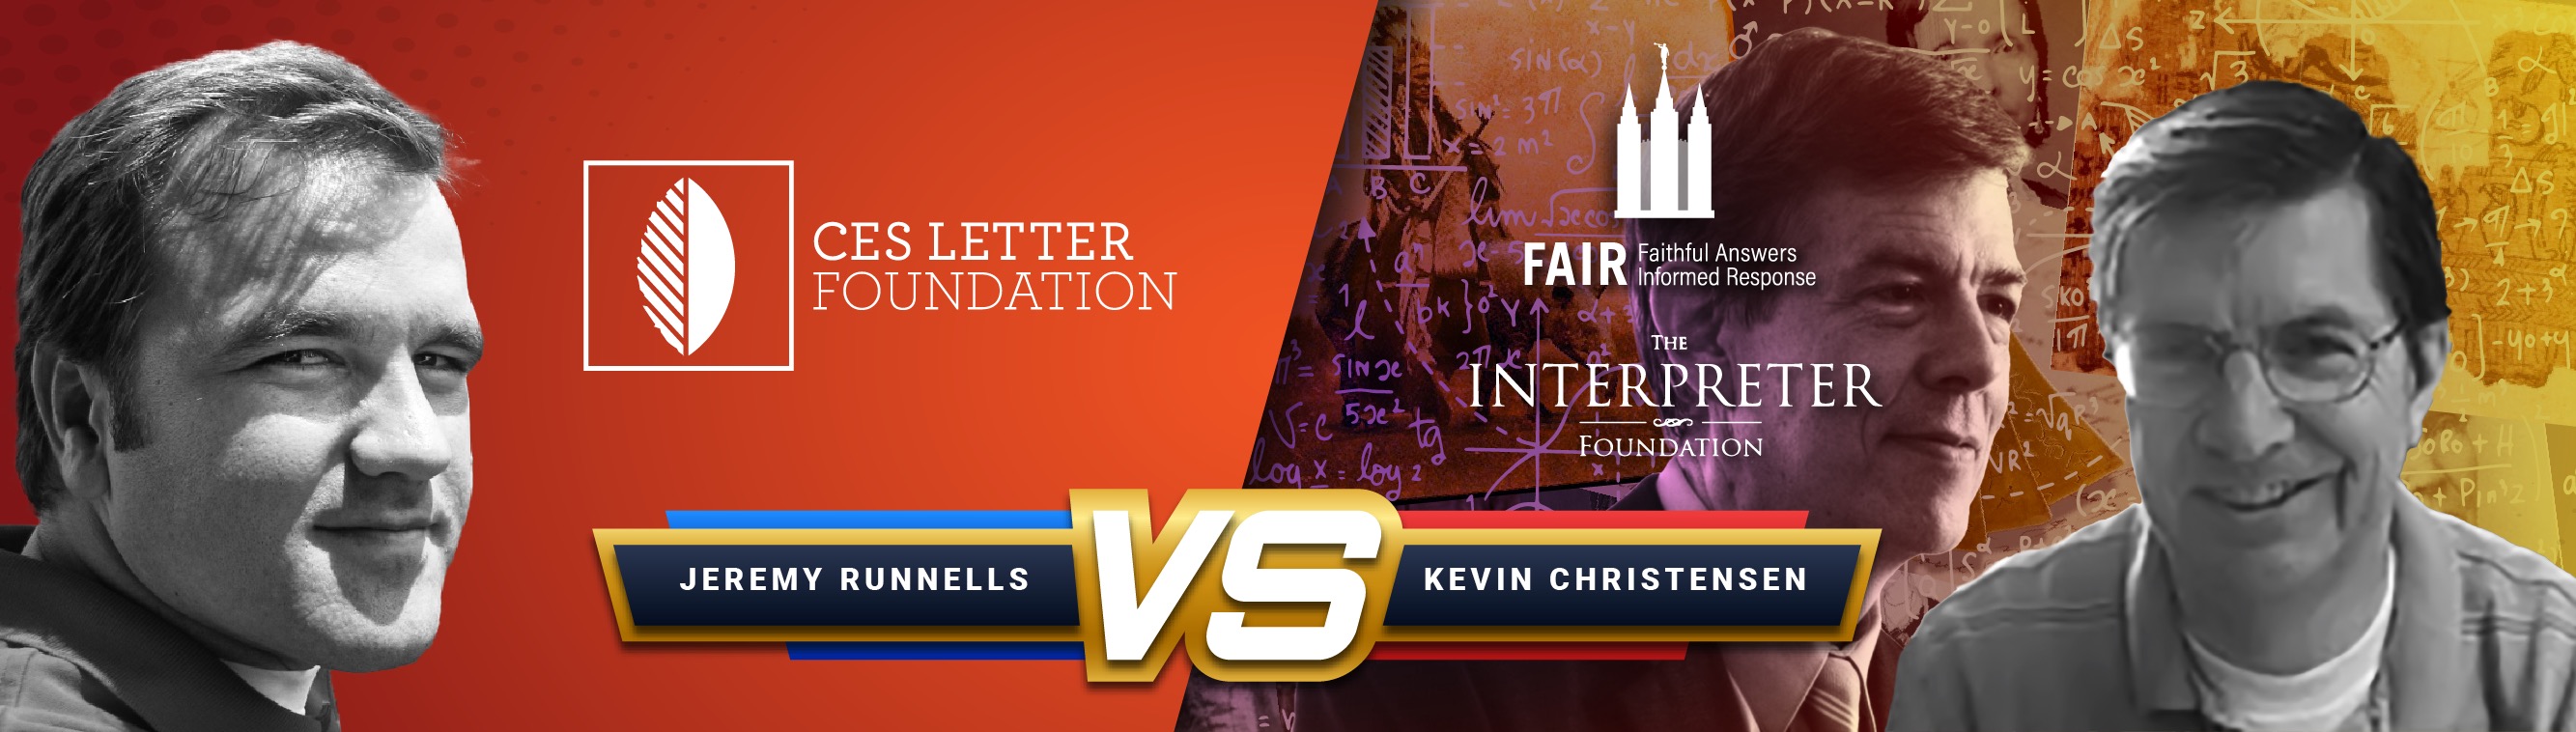 CES Letter Jeremy Runnells vs. Kevin Christensen Mormon Interpreter